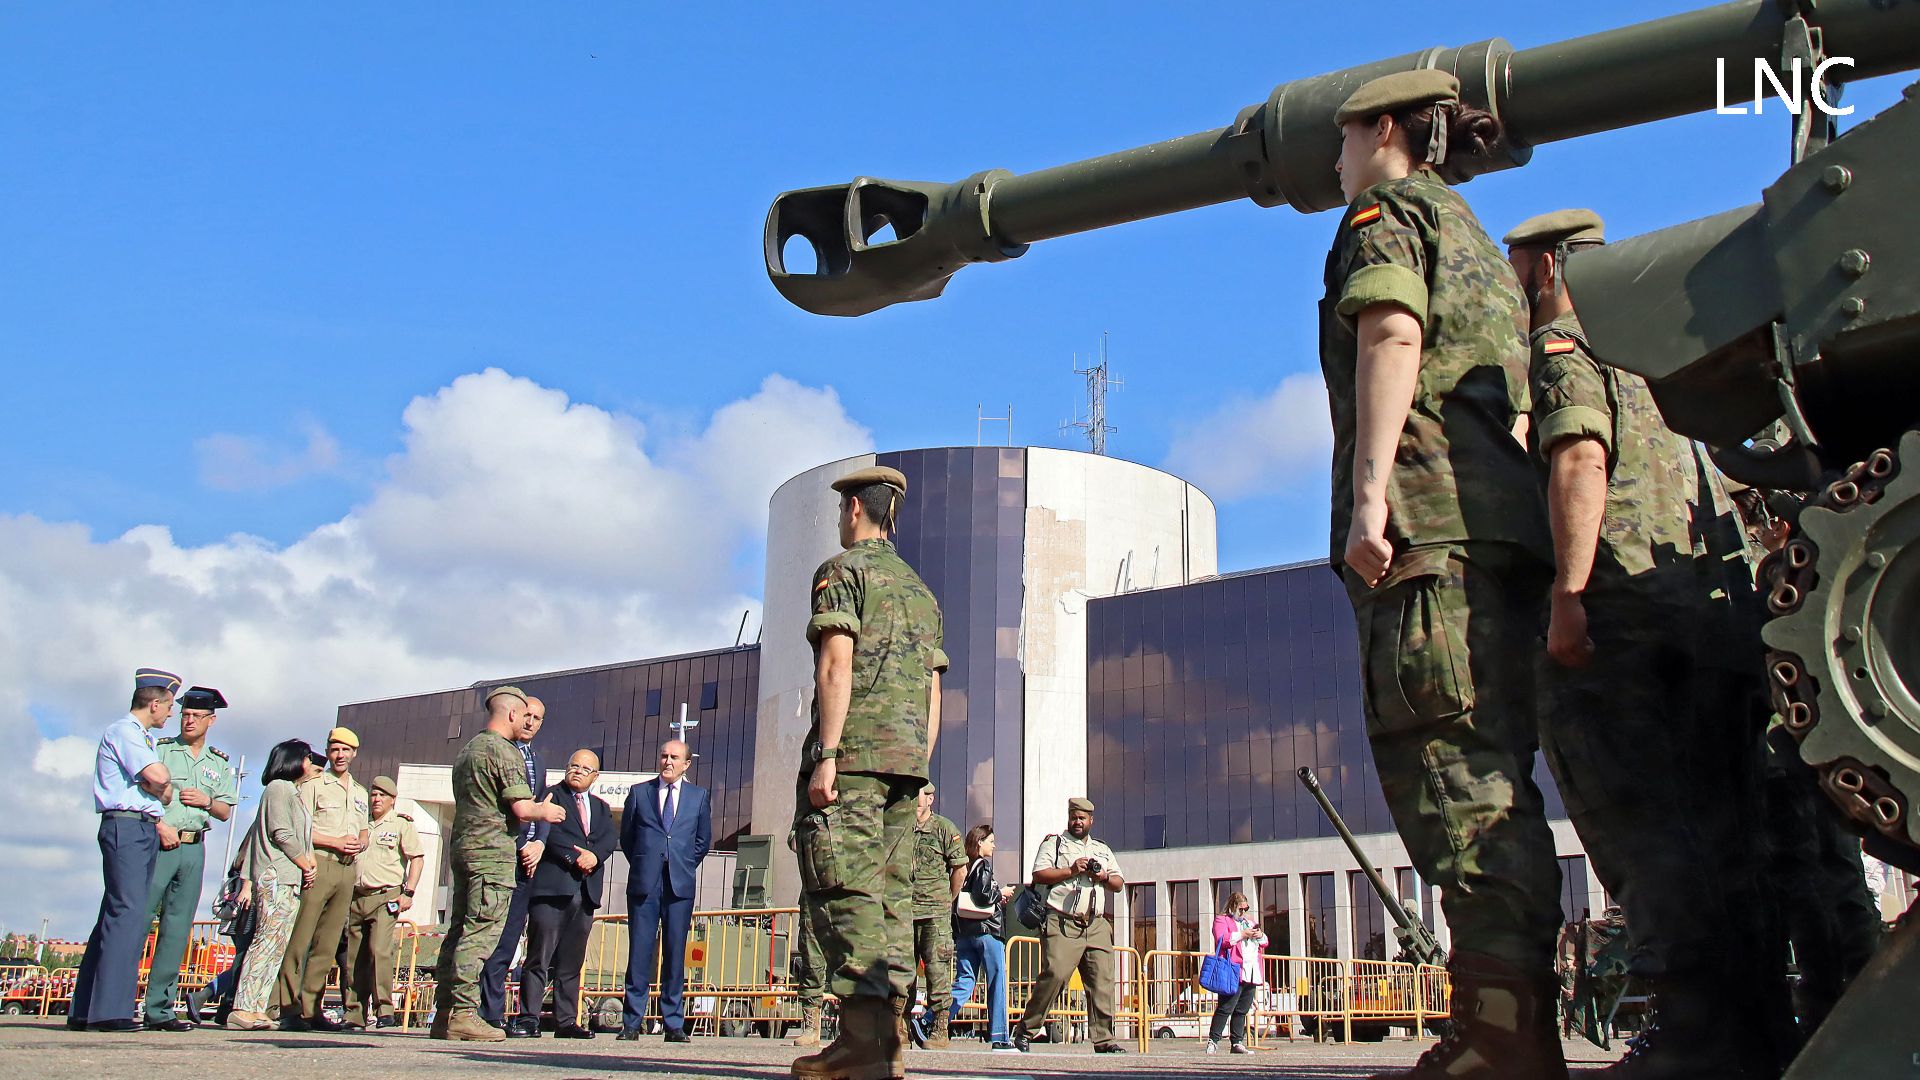 El alcalde de León, José Antonio Diez, inauguró la exposición militar por el Día de las Fuerzas Armadas. | SAÚL ARÉN